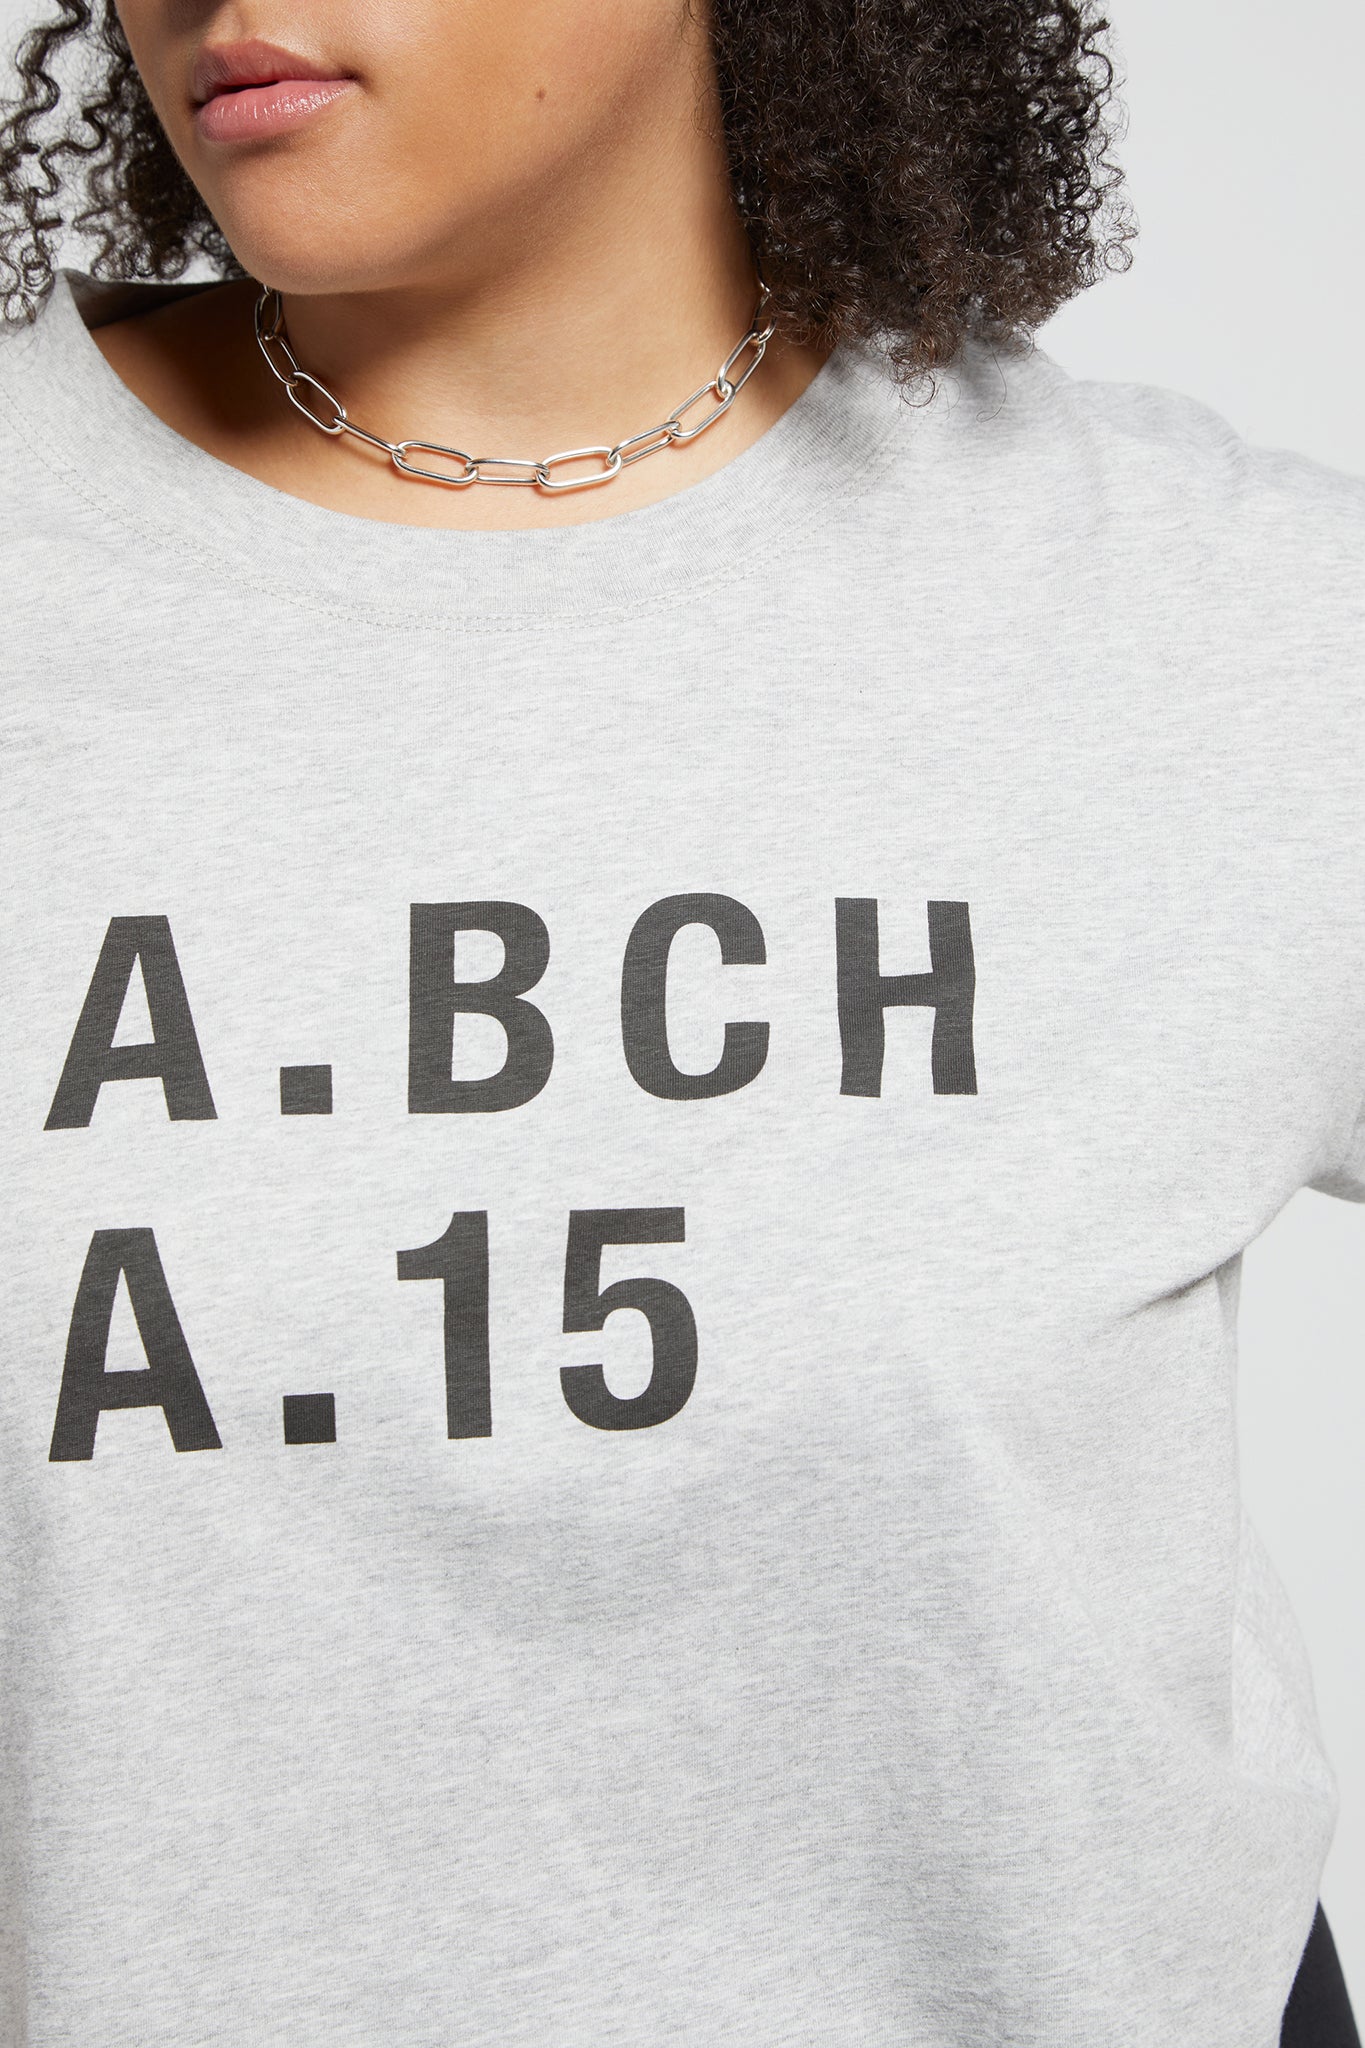 A.BCH A.15 Grey Marle Crop Fan Tshirt in Organic Cotton